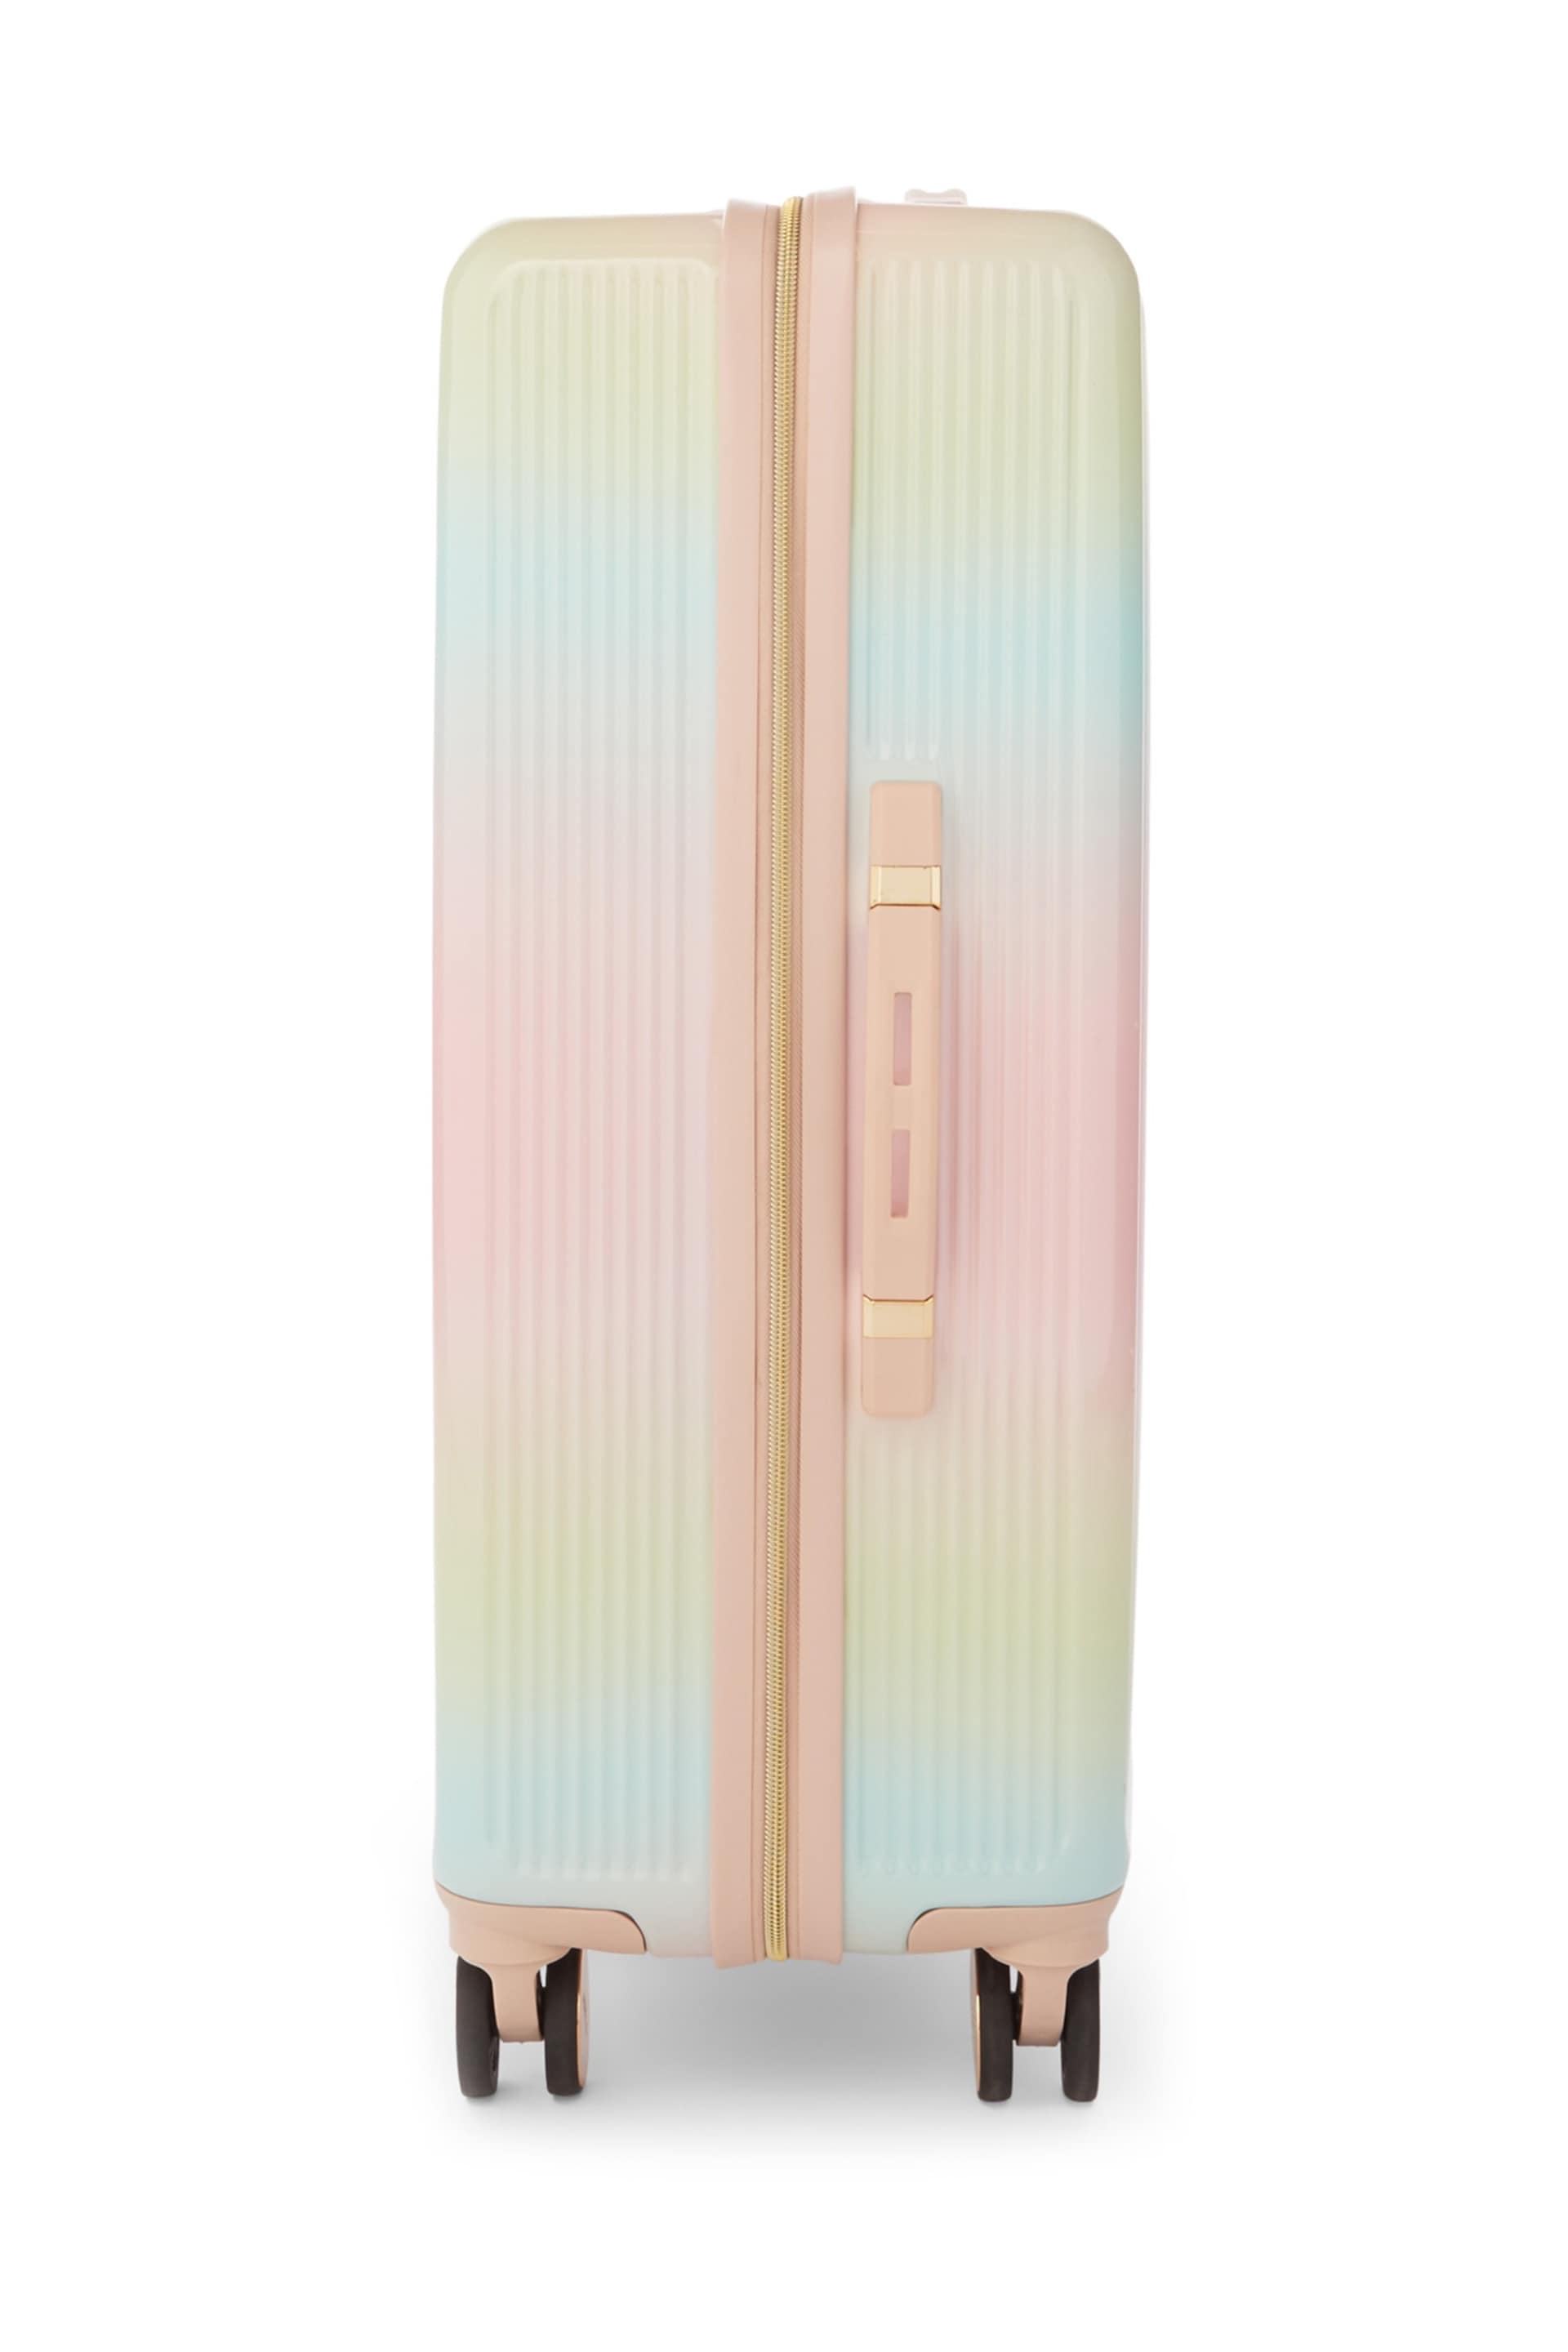 Dune London Pink Olive Medium Suitcase - Image 4 of 6